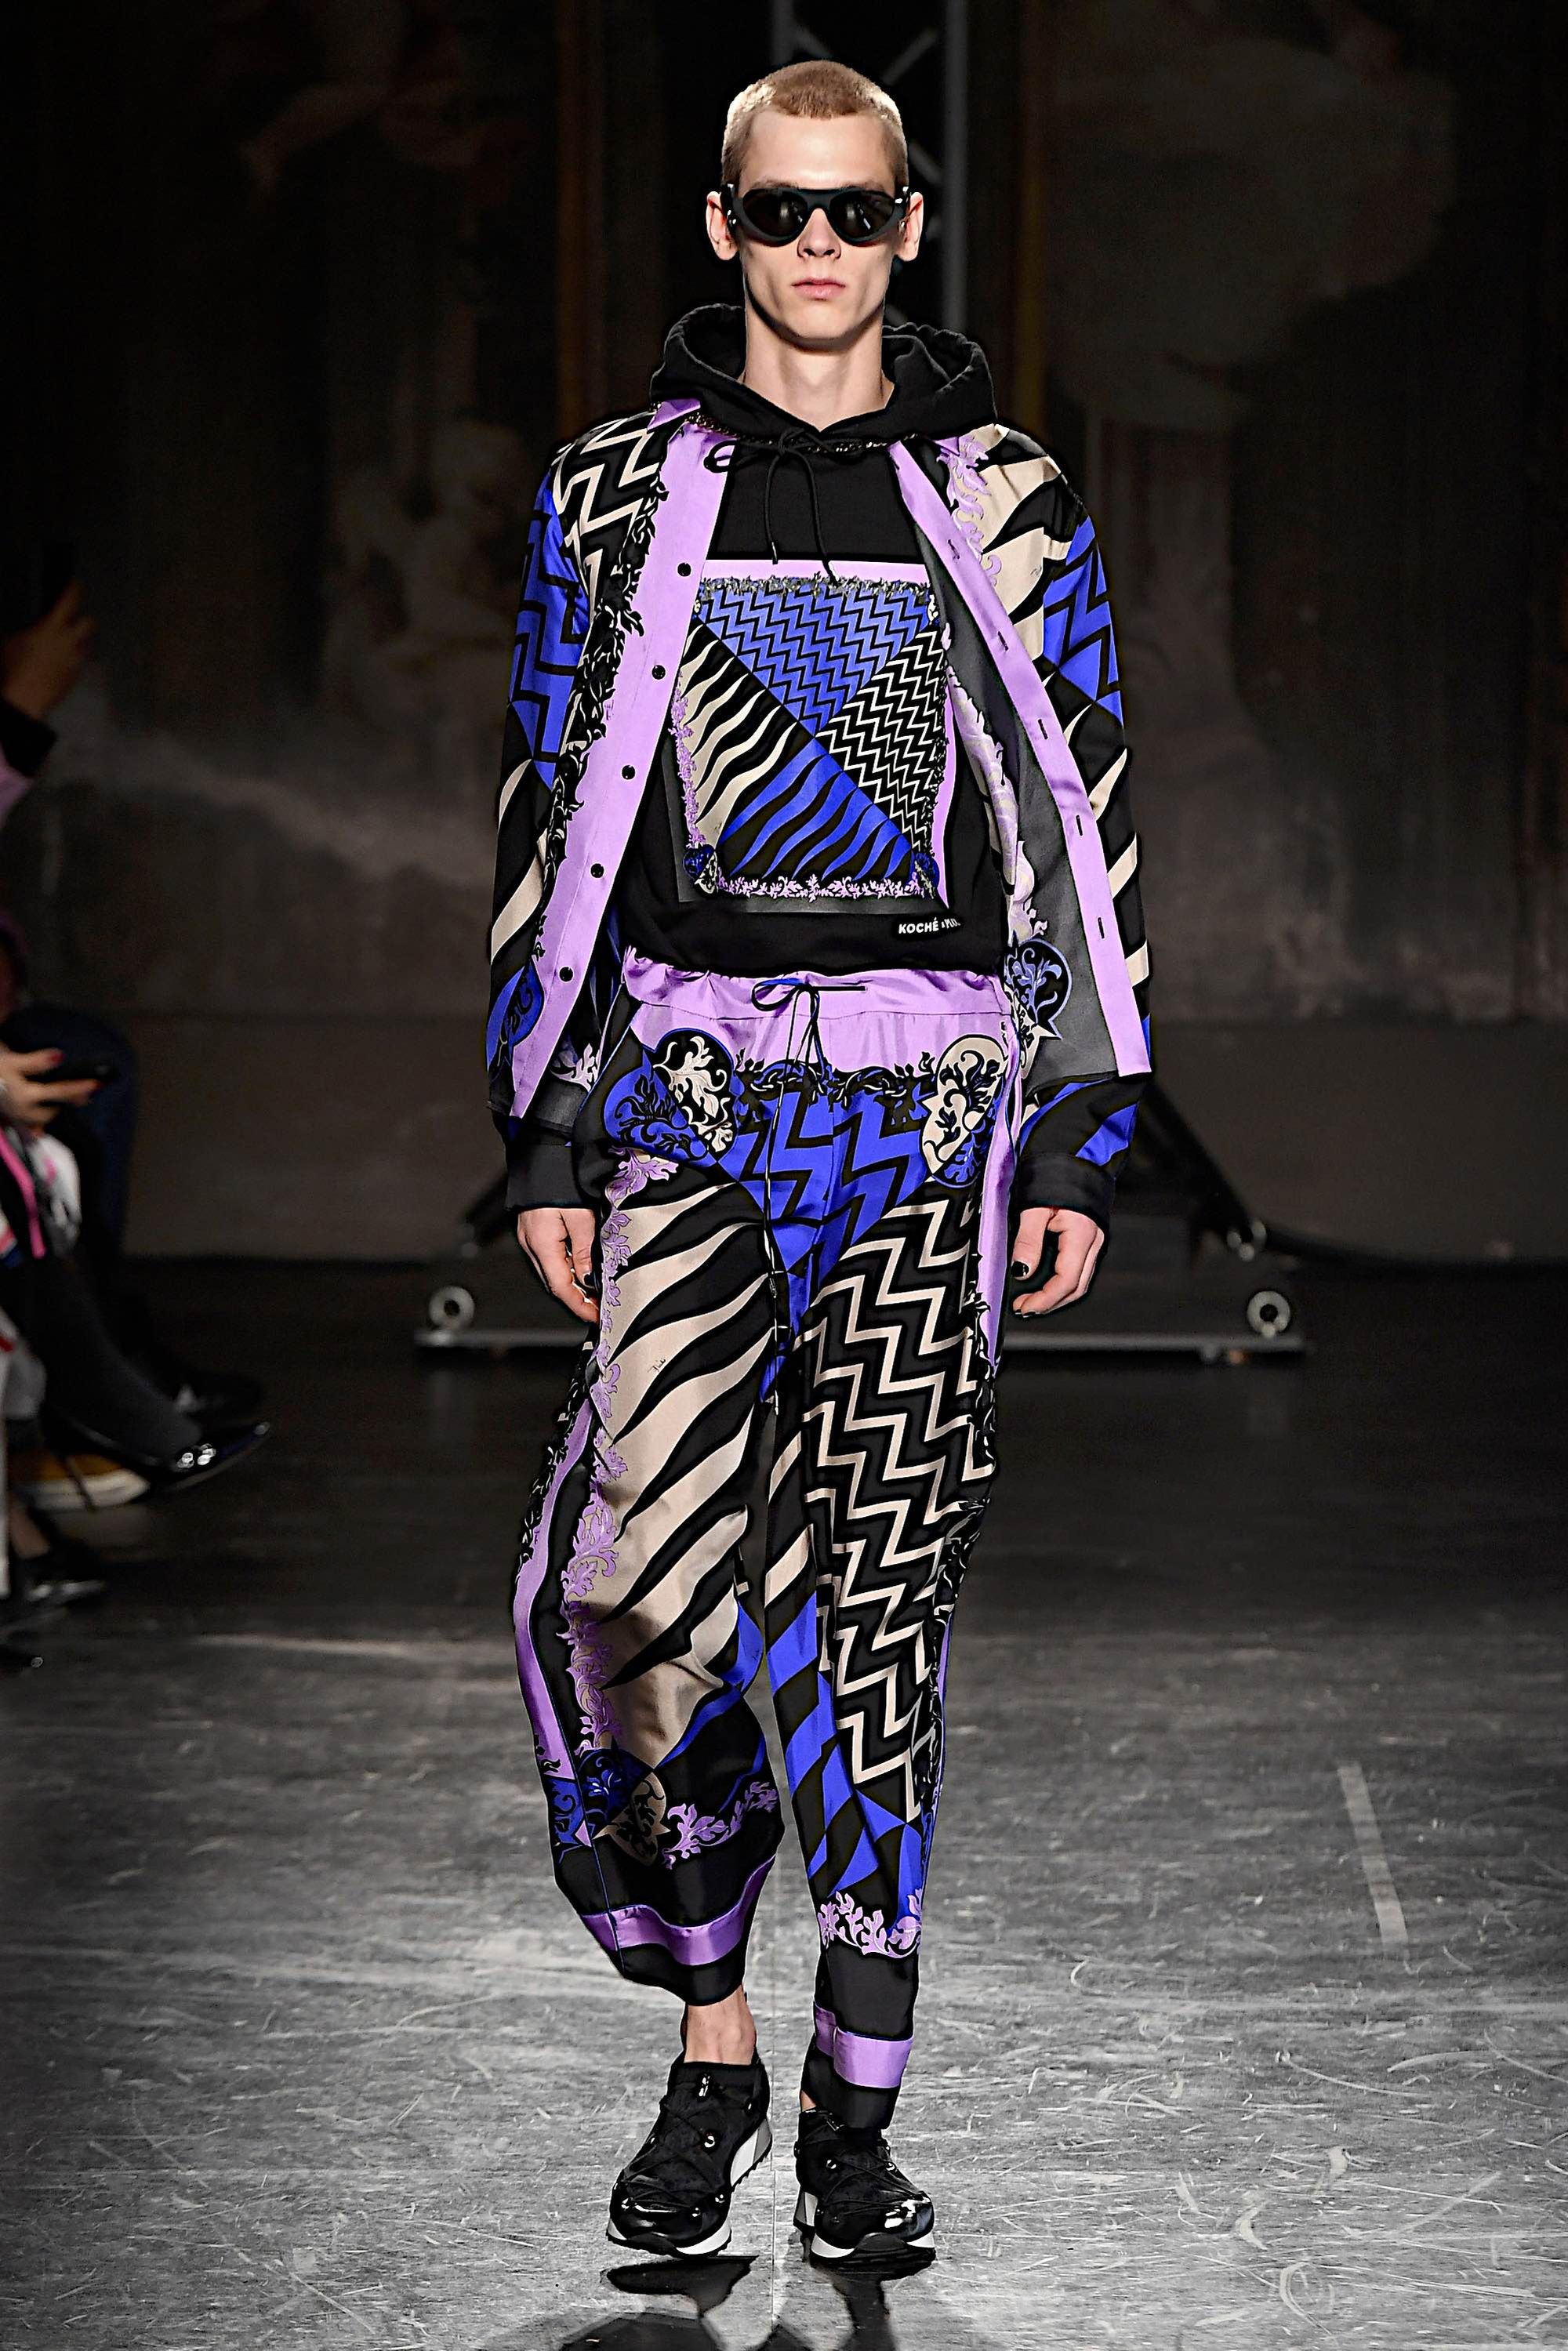 Emilio Pucci F/W 17 womenswear #34 - Tagwalk: The Fashion Search